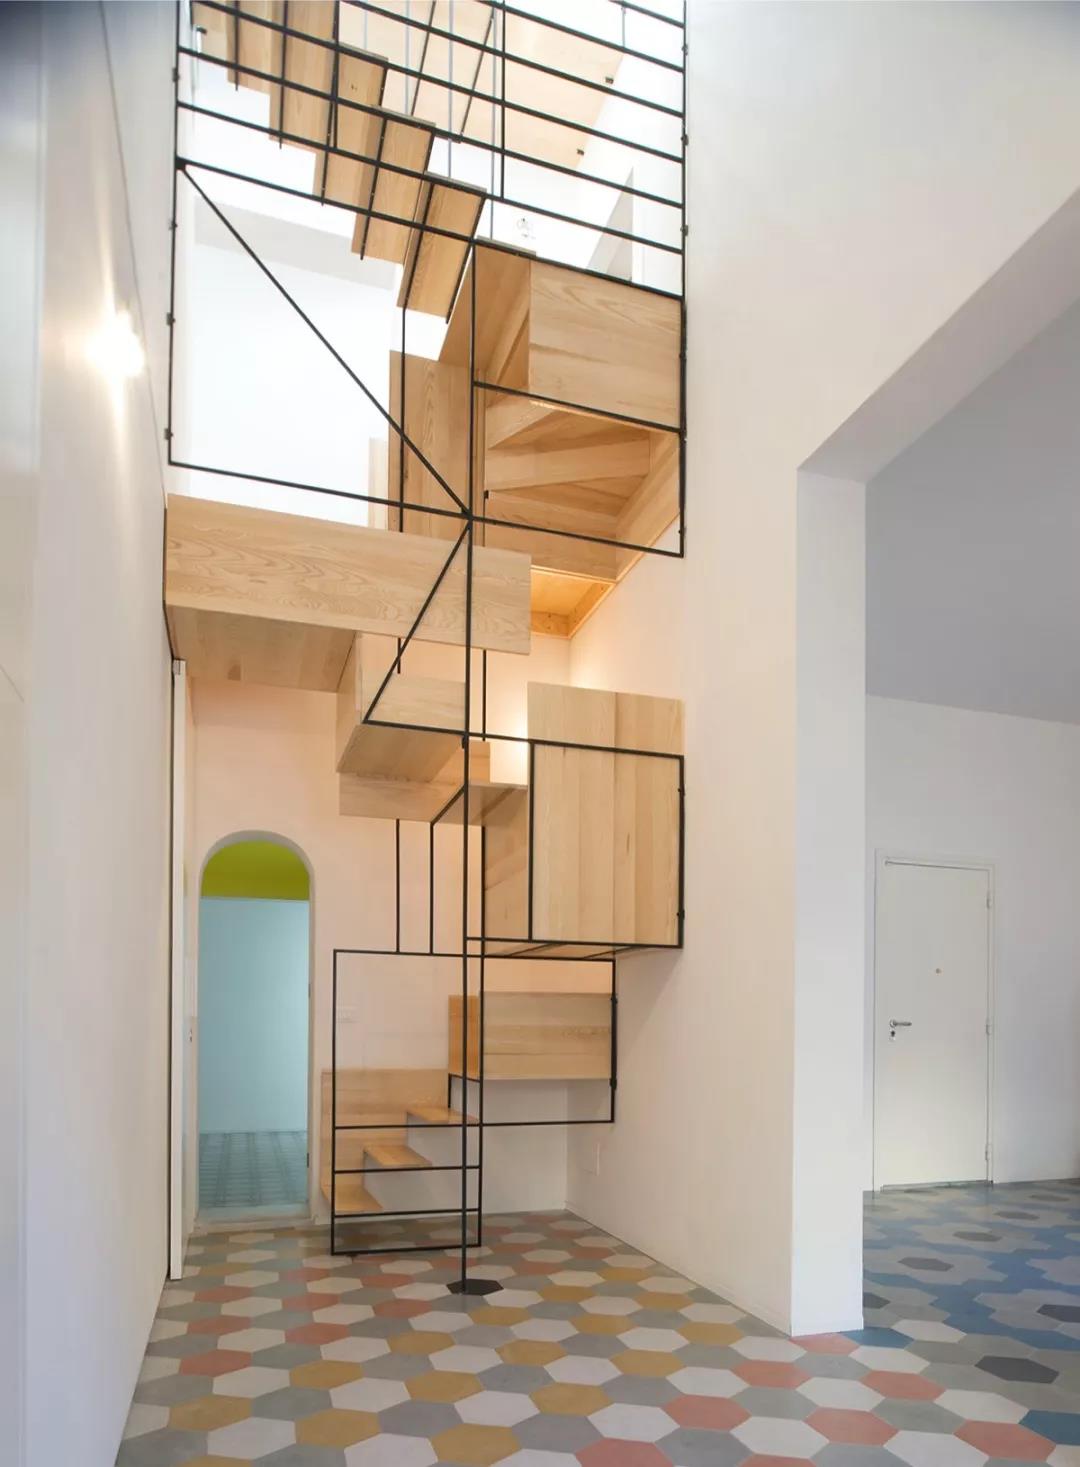 极简线条楼梯设计效果图